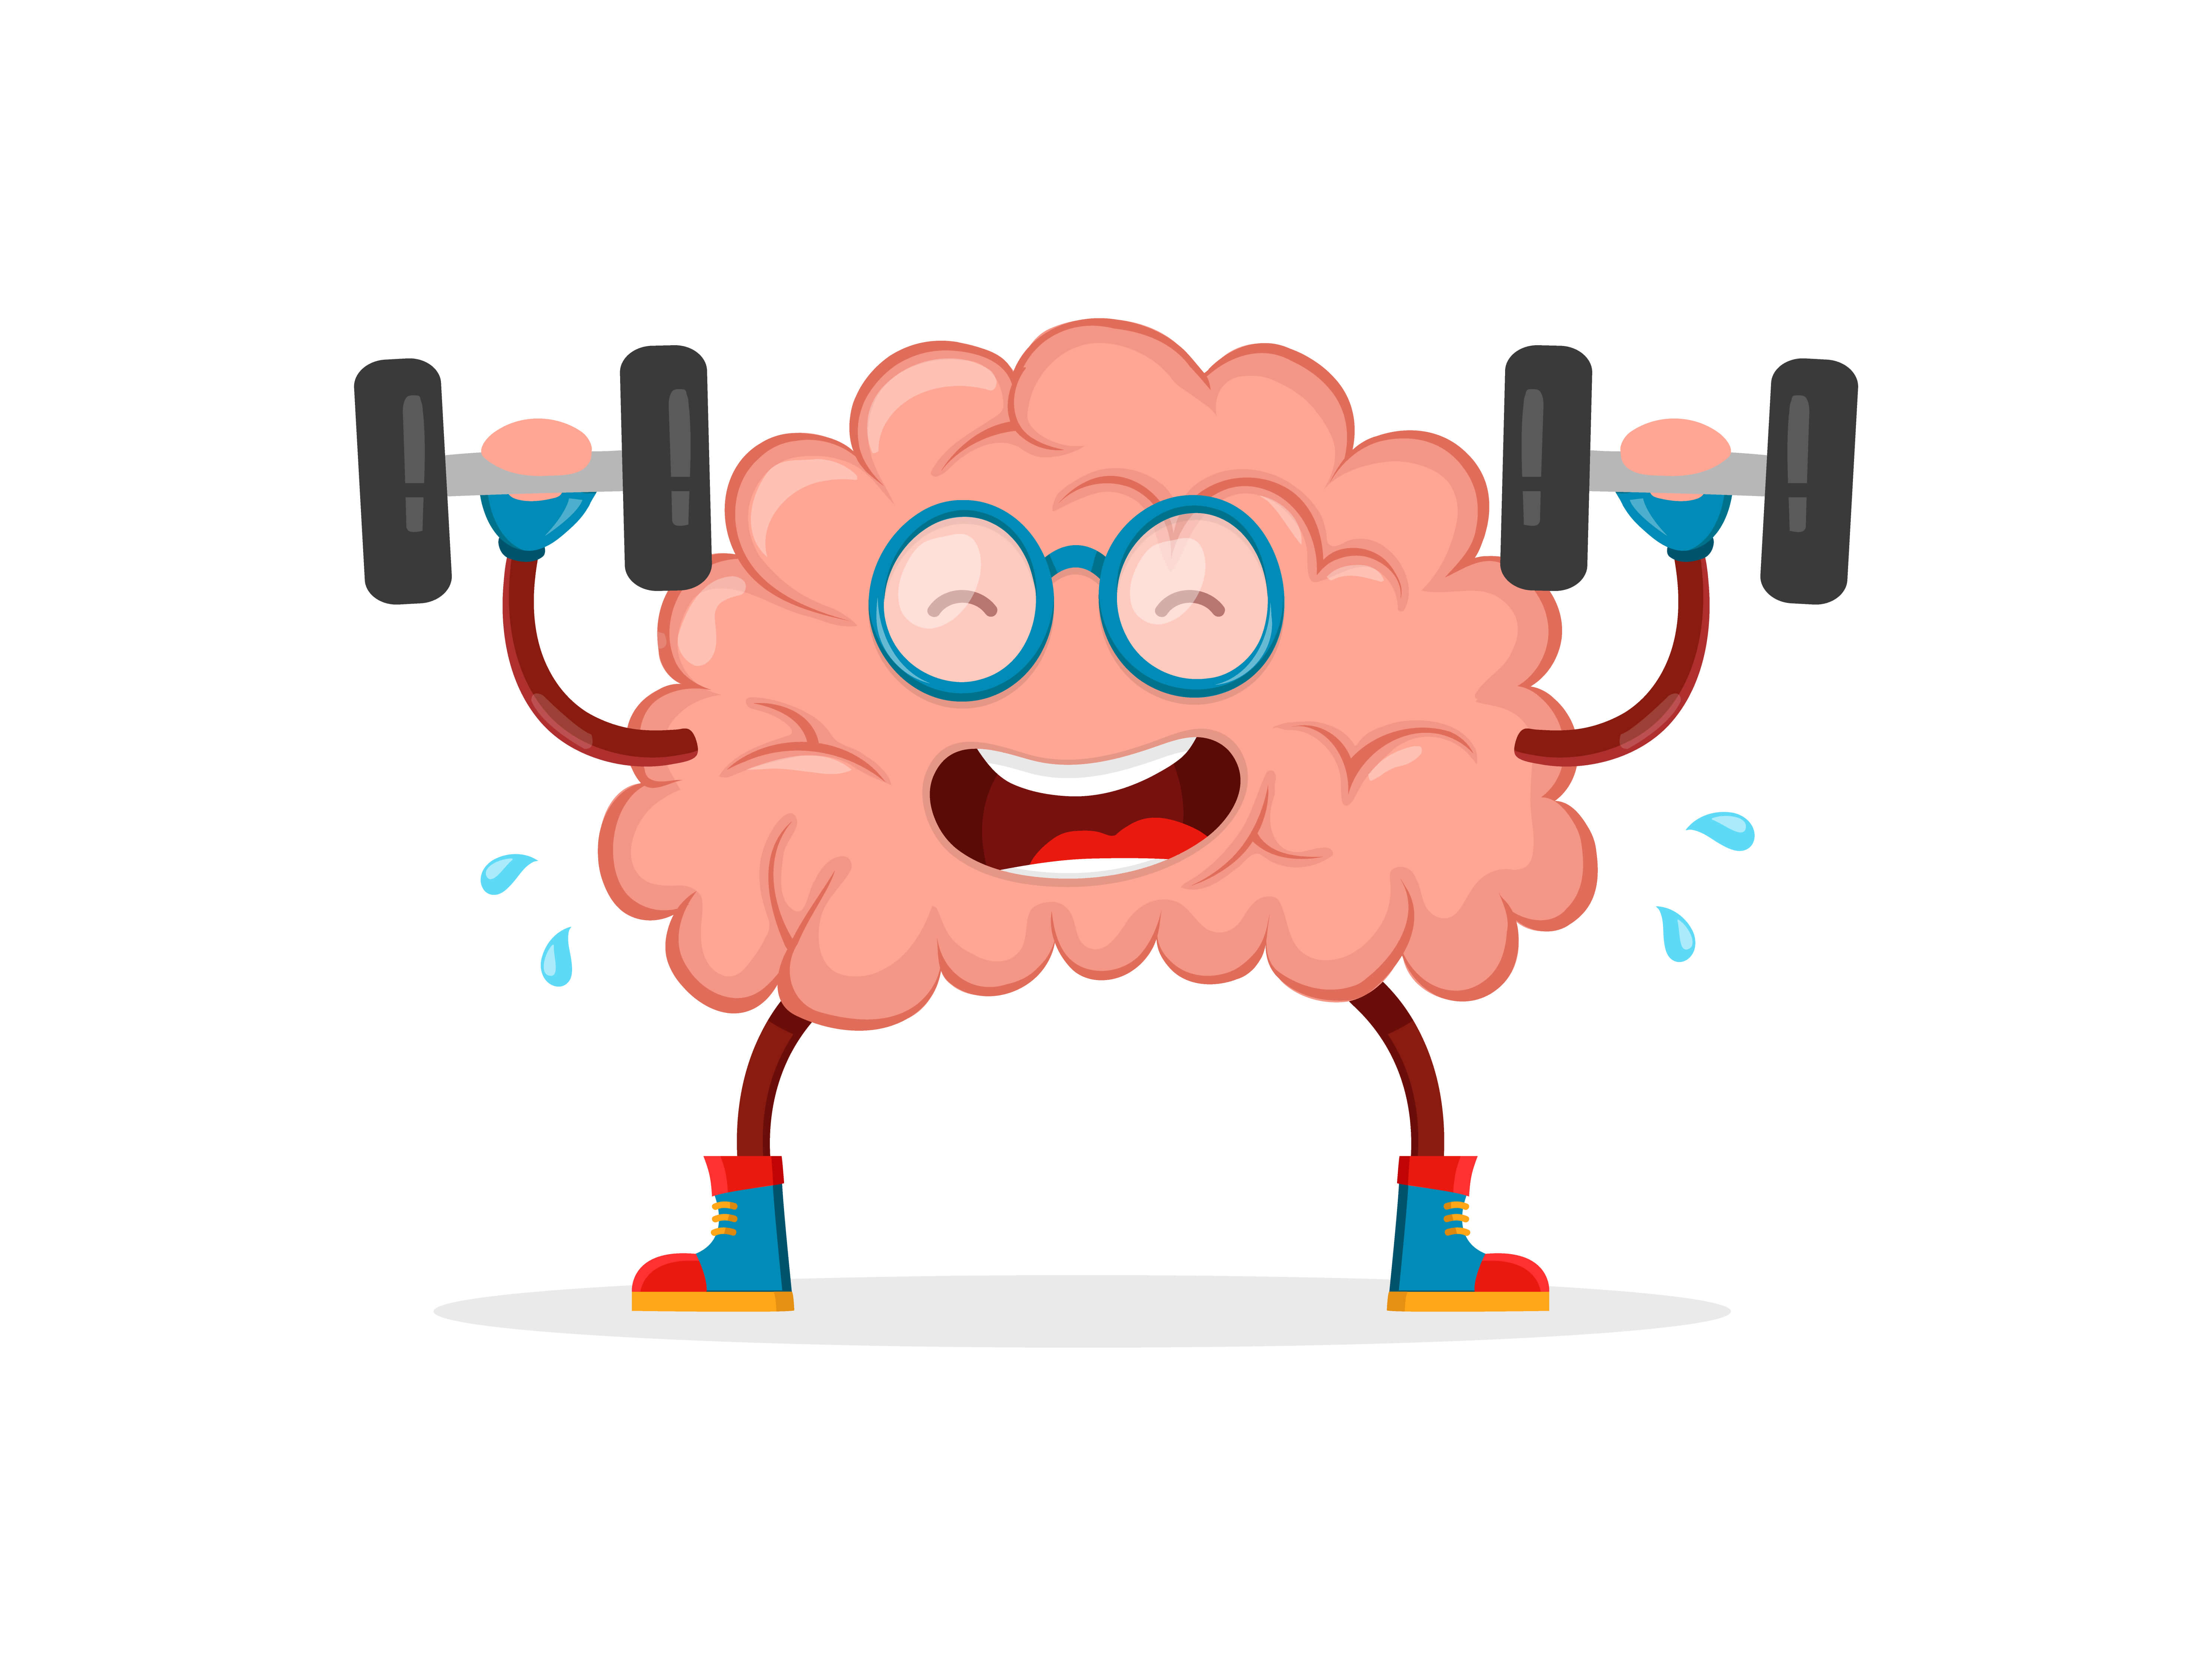 Cerebro haciendo gimnasia como ejemplo de mitos del cerebro